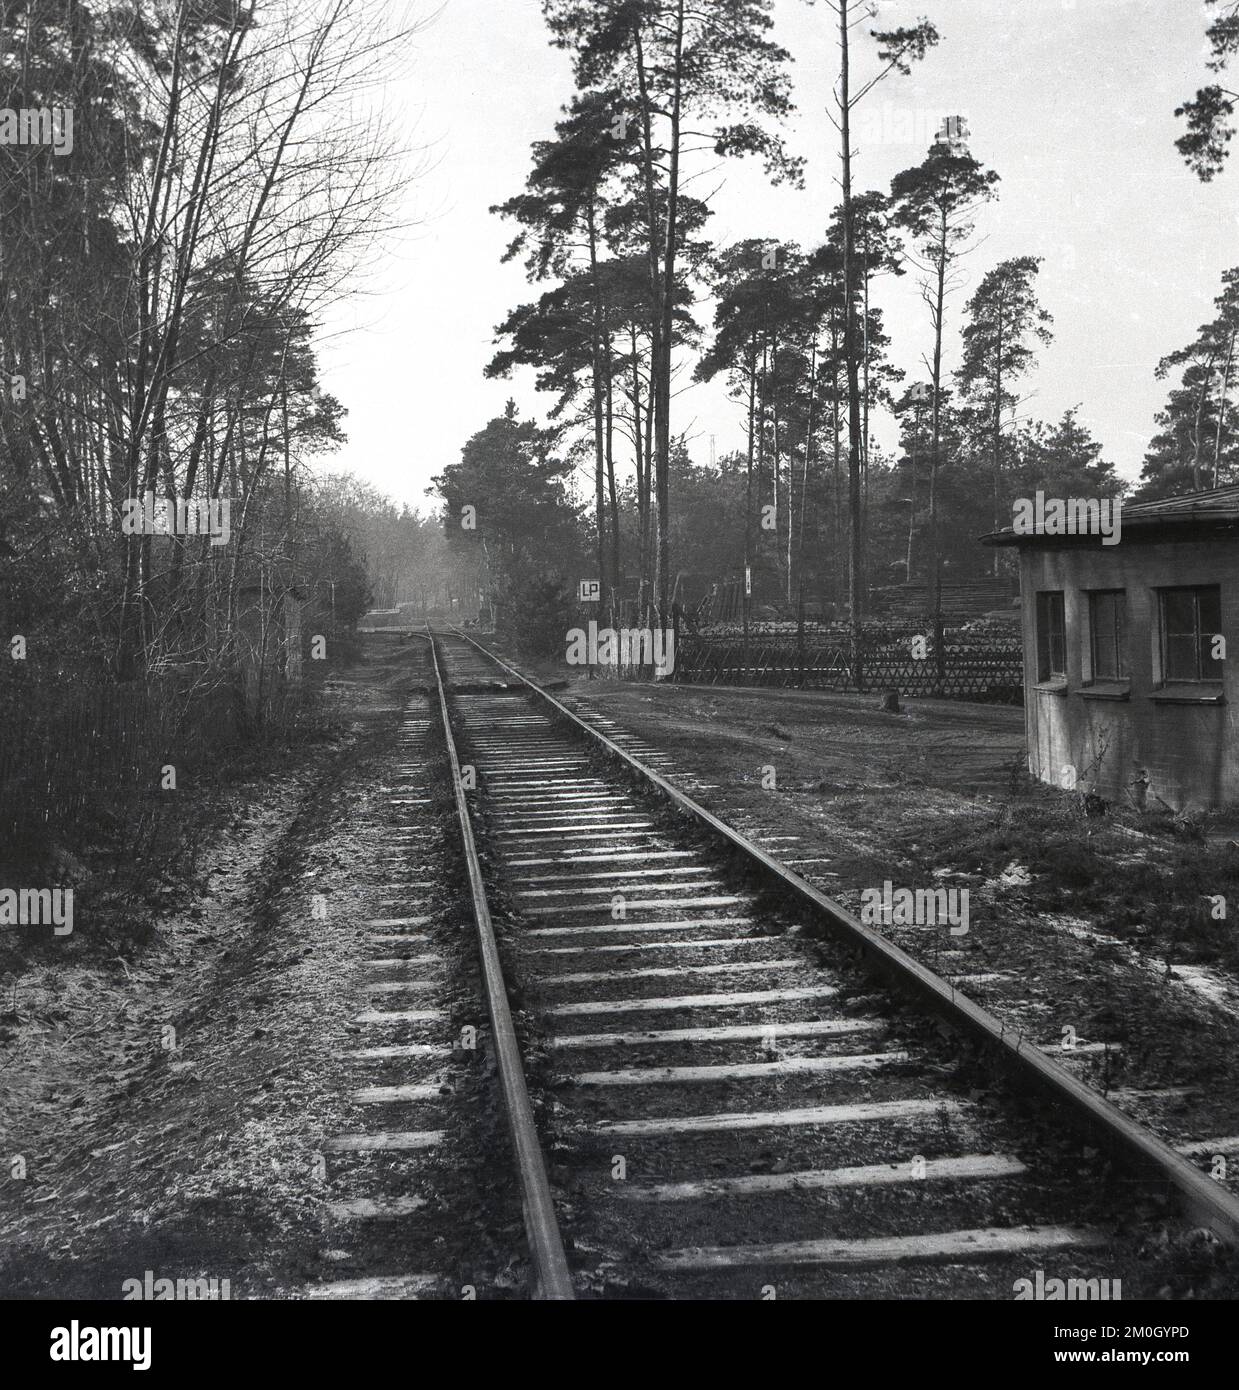 1950s, storico, inverno, gelido, una vista lungo una ferrovia in una foresta, con vecchia capanna di manutenzione accanto ad esso, Inghilterra, Regno Unito. Lettere sulla posta accanto alla ferrovia, LP. Foto Stock